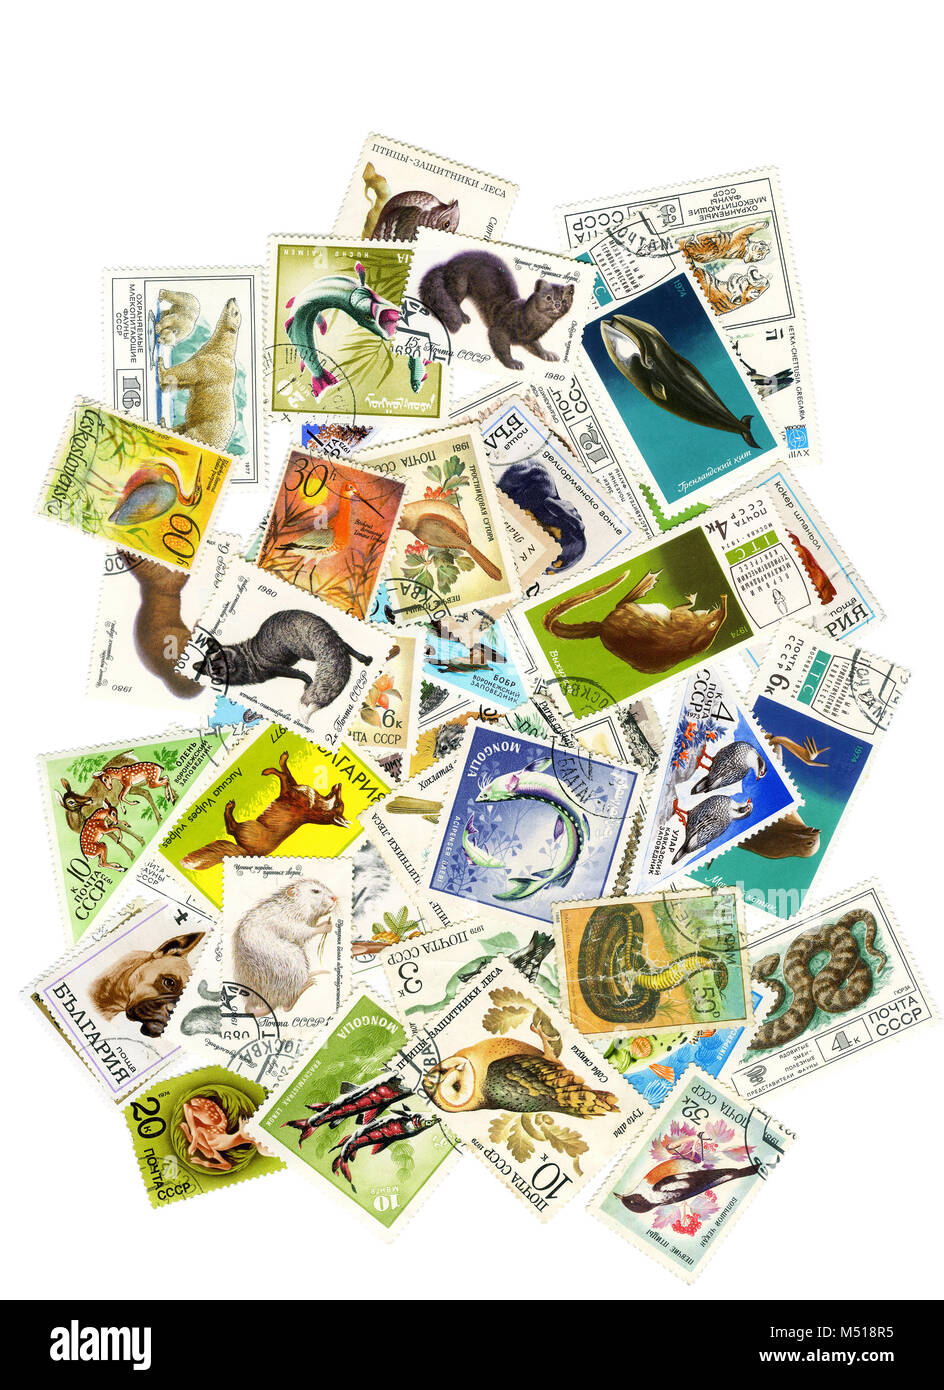 Eine Collage von Briefmarken zum Thema Natur. Zu einer Collage von